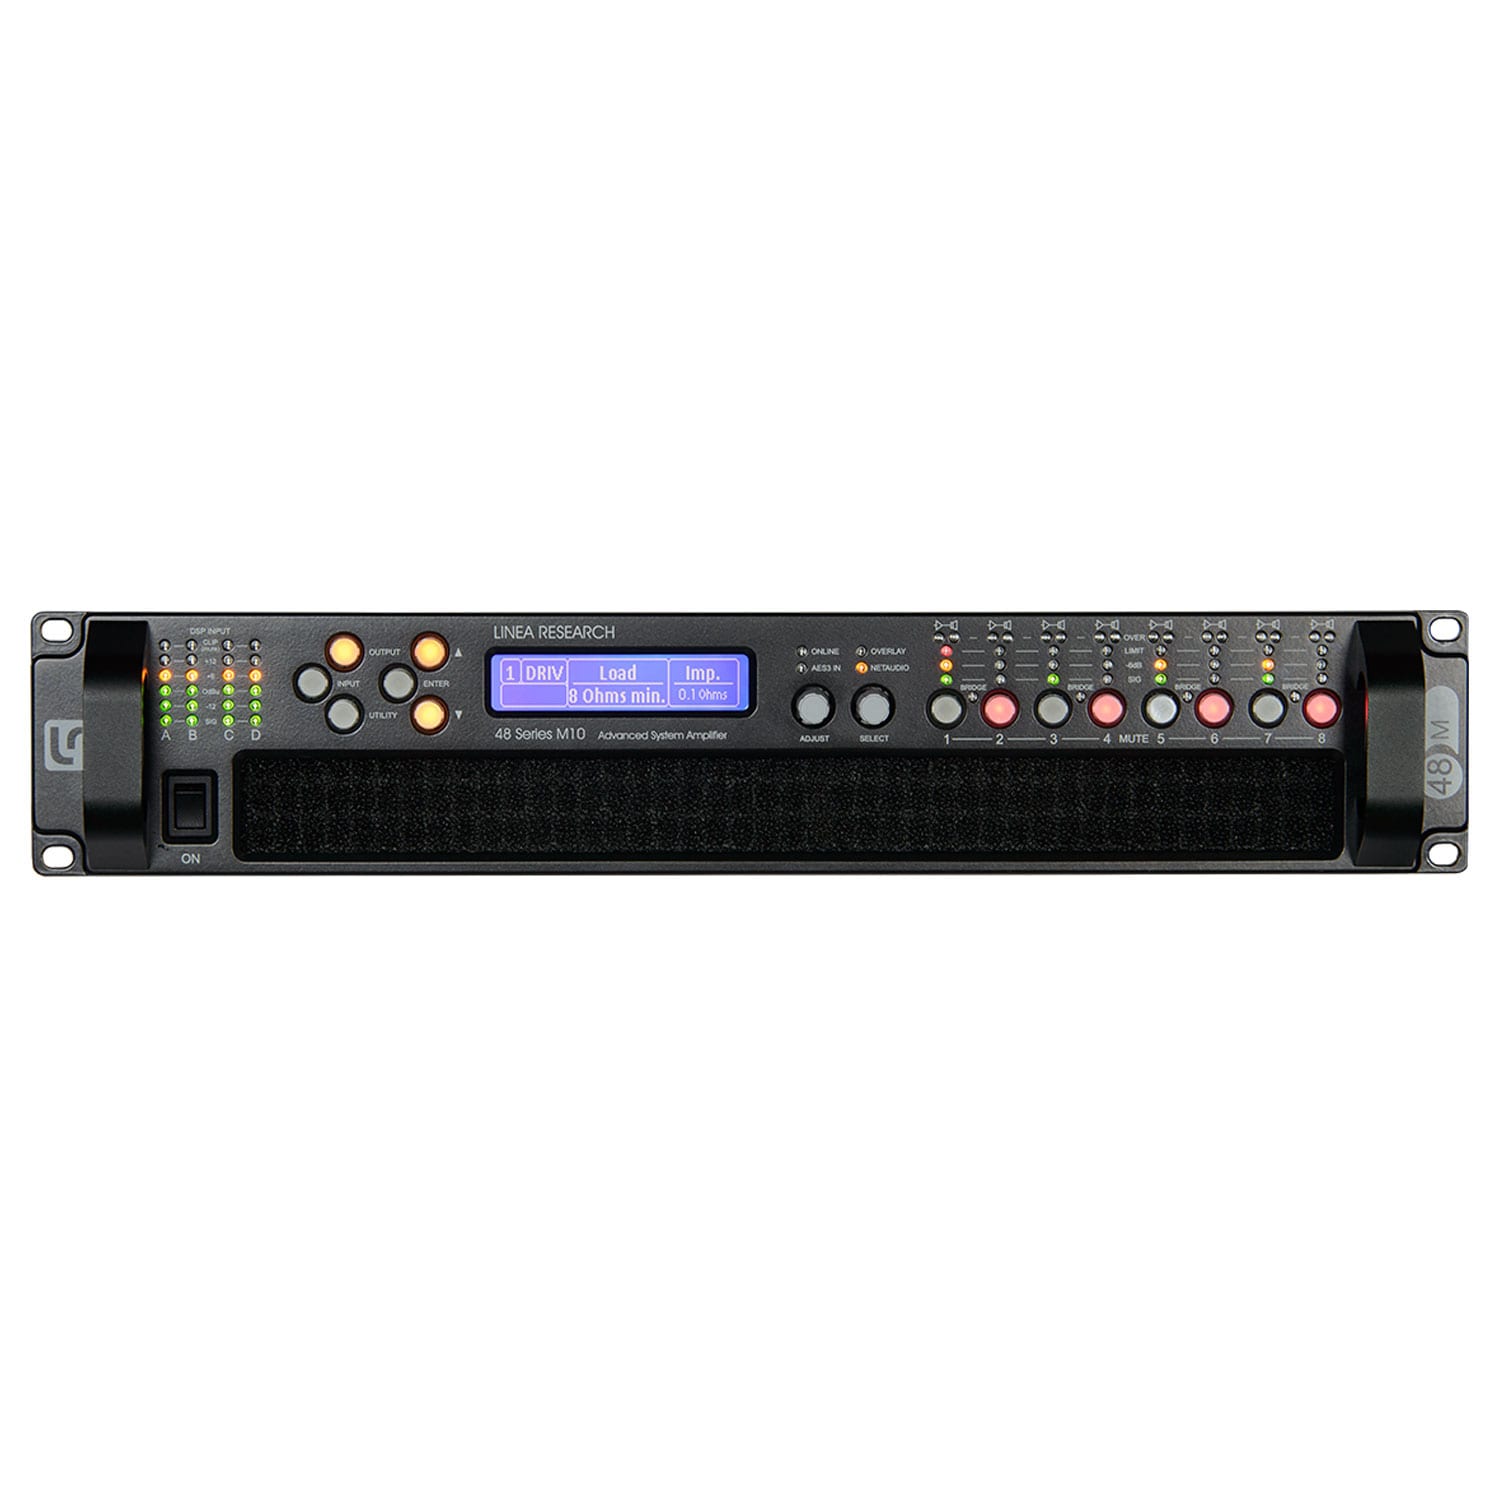 Amplificatoare profesionale - Amplificator Linea Research 44M06, audioclub.ro